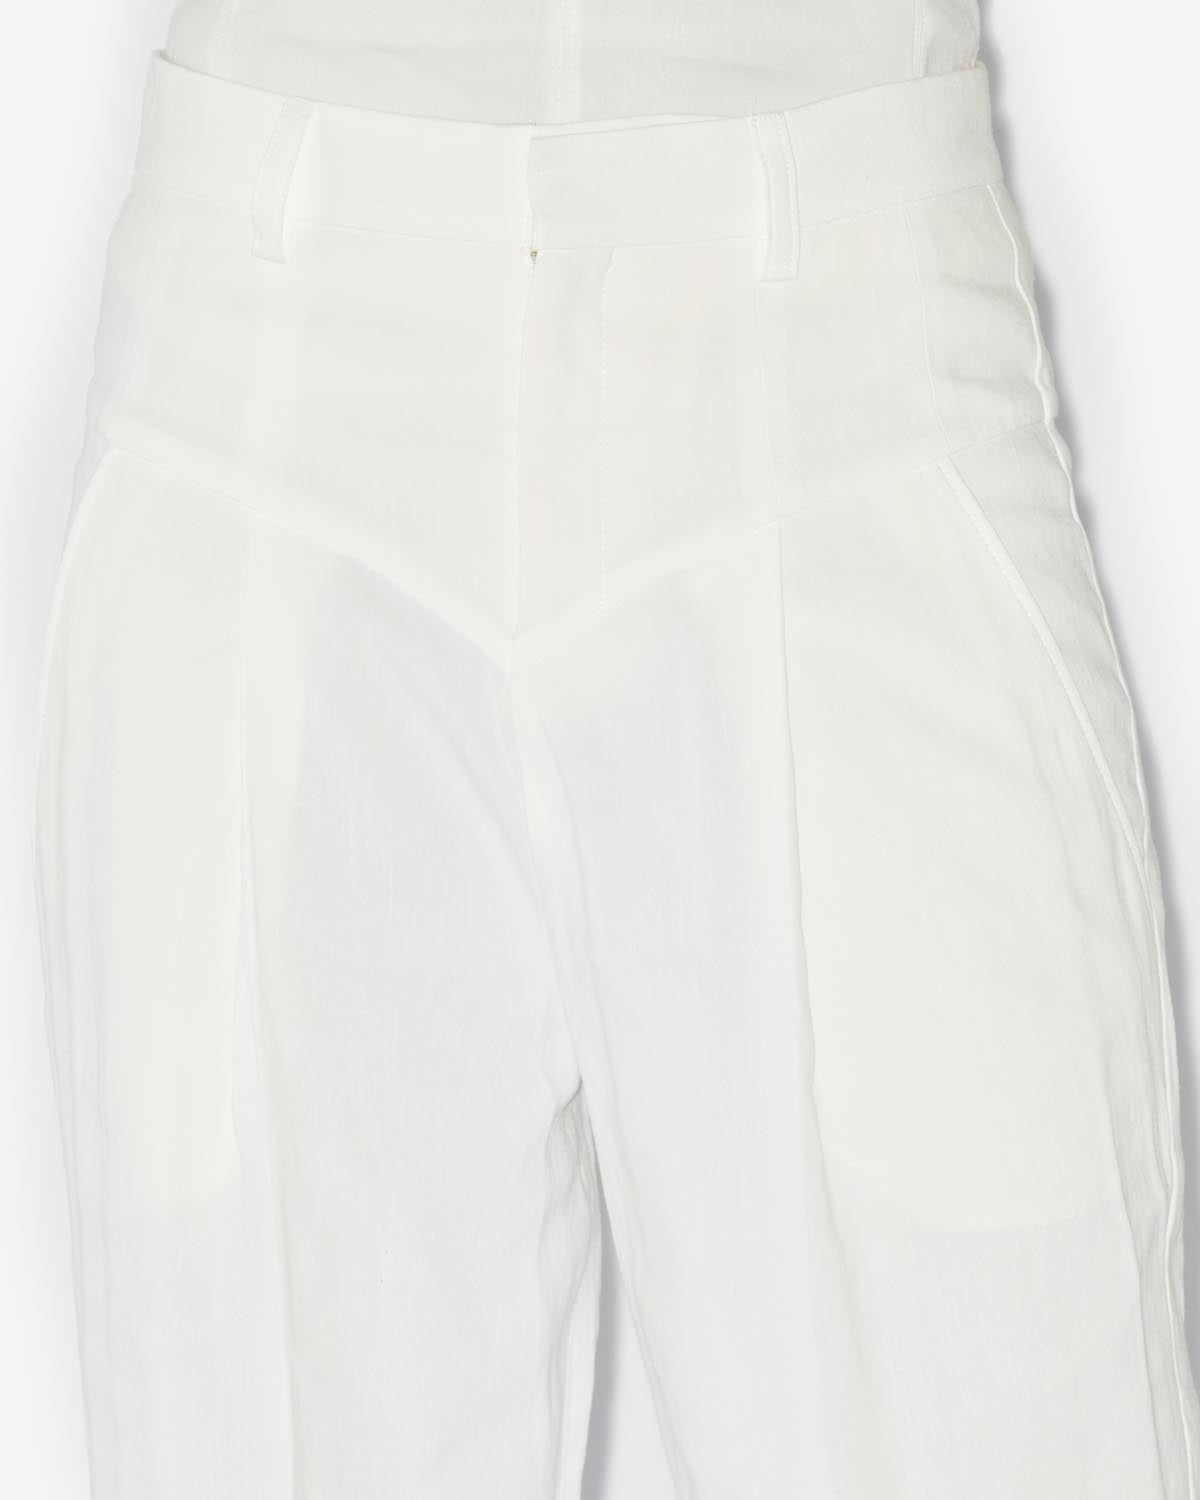 Staya pantaloni Woman Bianco 3